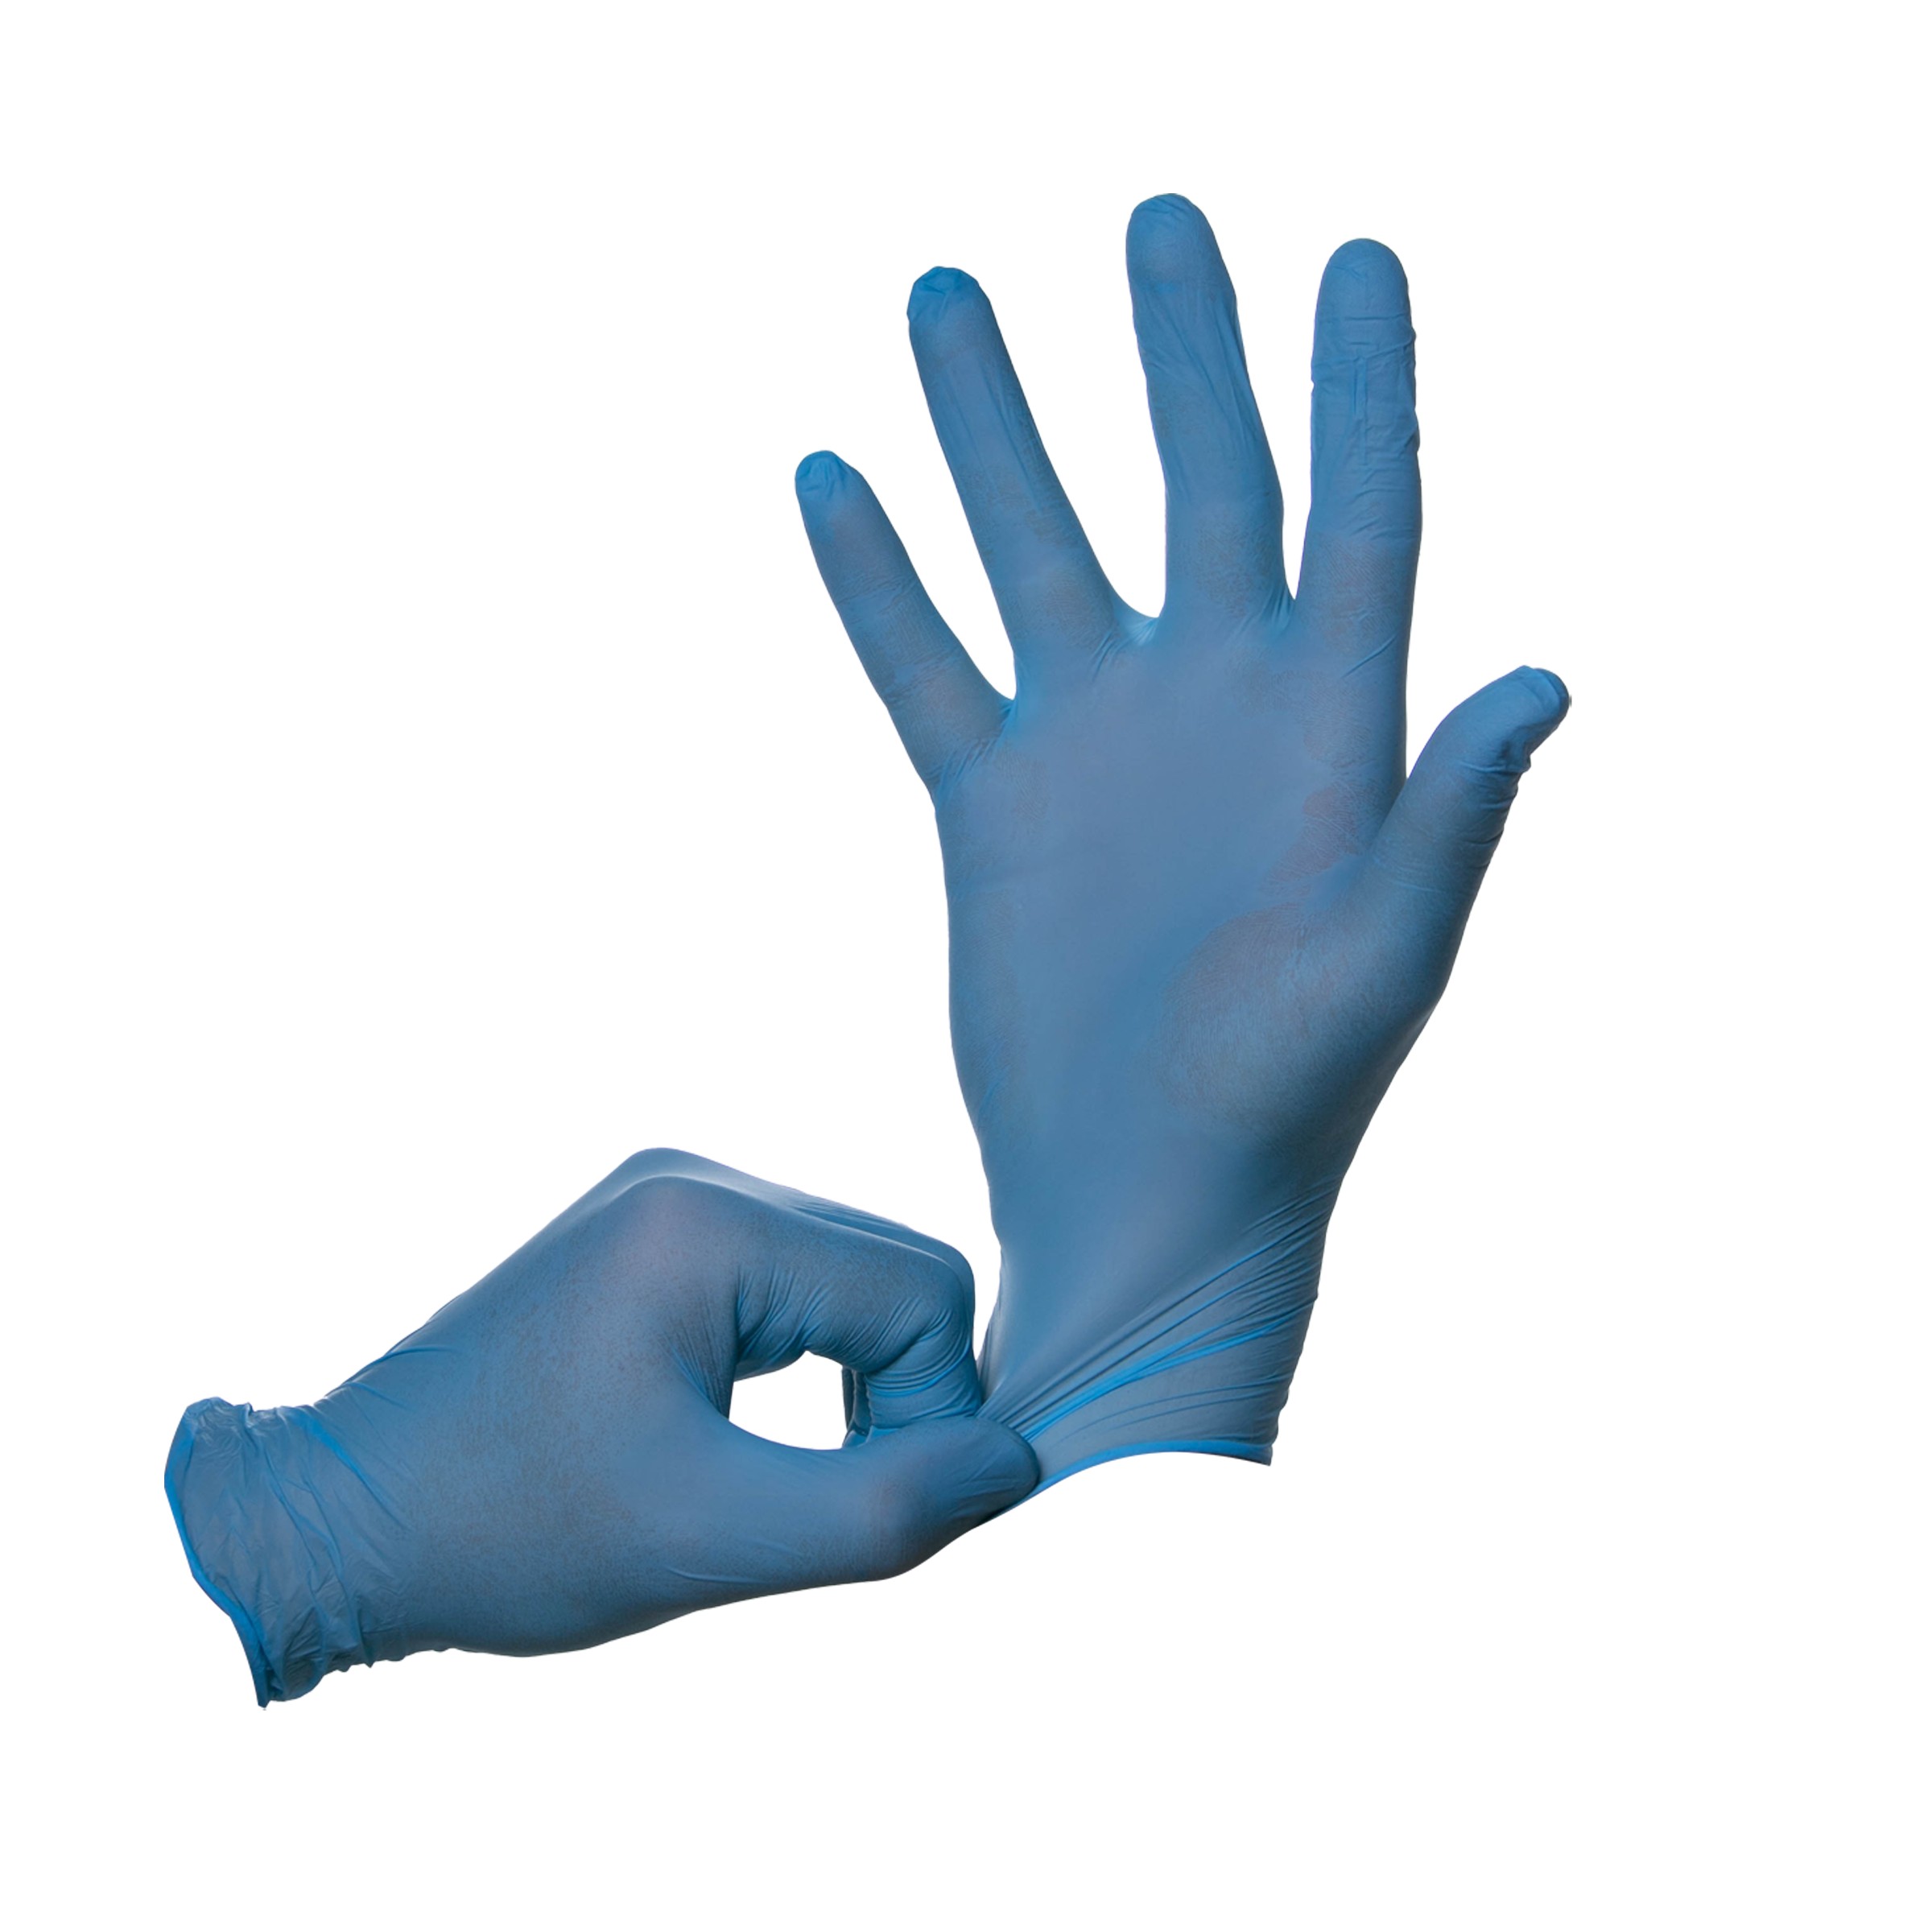 Перчатки INEKTA диагностические (смотровые) нестерильные нитриловые неопудренные текстурированные. Размер L. Голубого цвета.